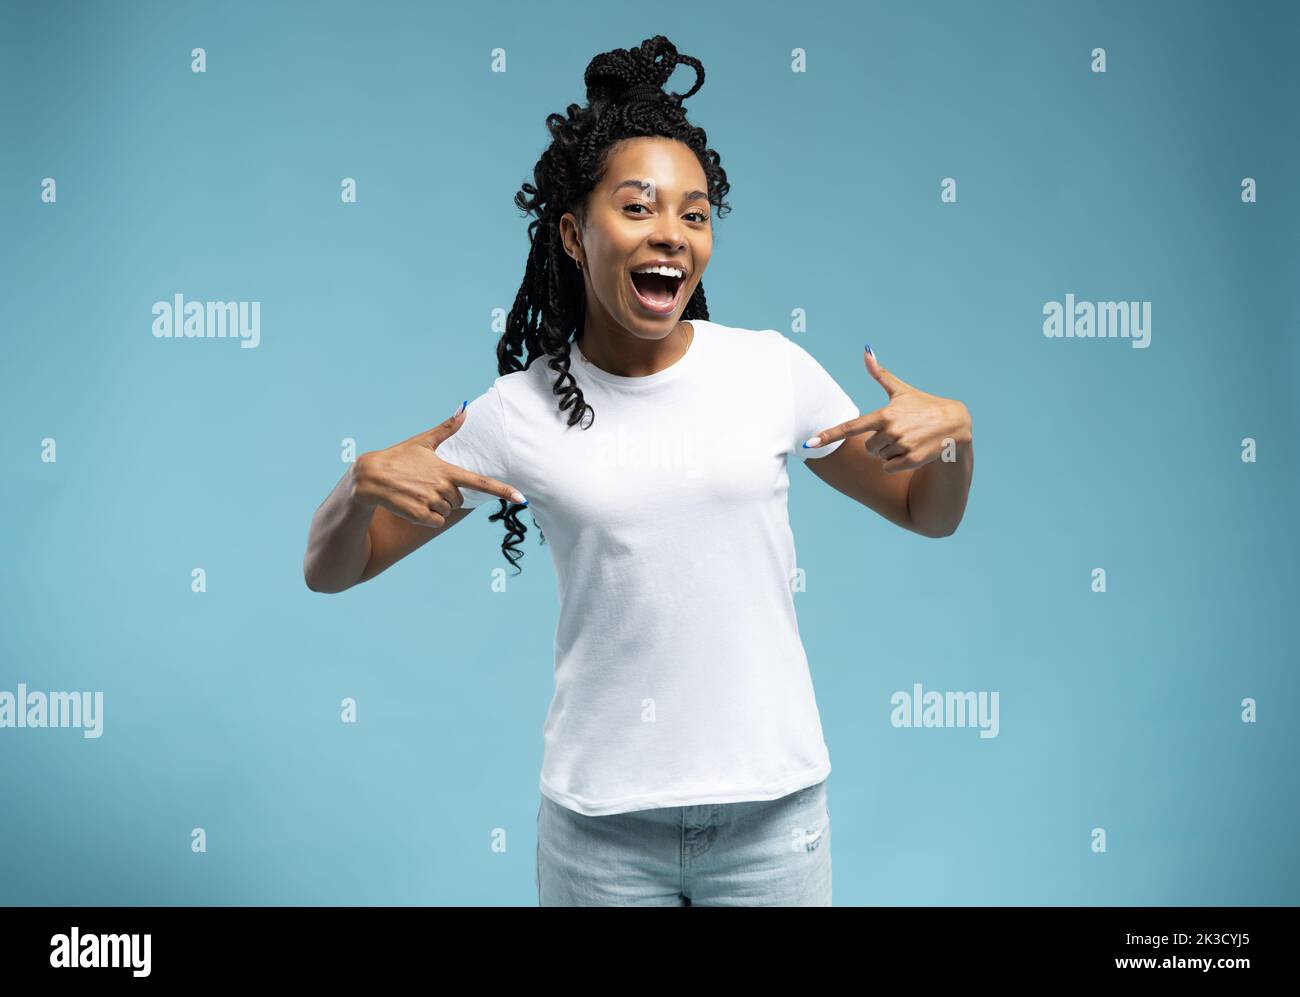 Lächelnde afroamerikanische Frau in einem weißen T-Shirt, die mit dem Finger auf ihr T-Shirt zeigt, zufriedene junge Kundin, die tolle Einkäufe macht Stockfoto